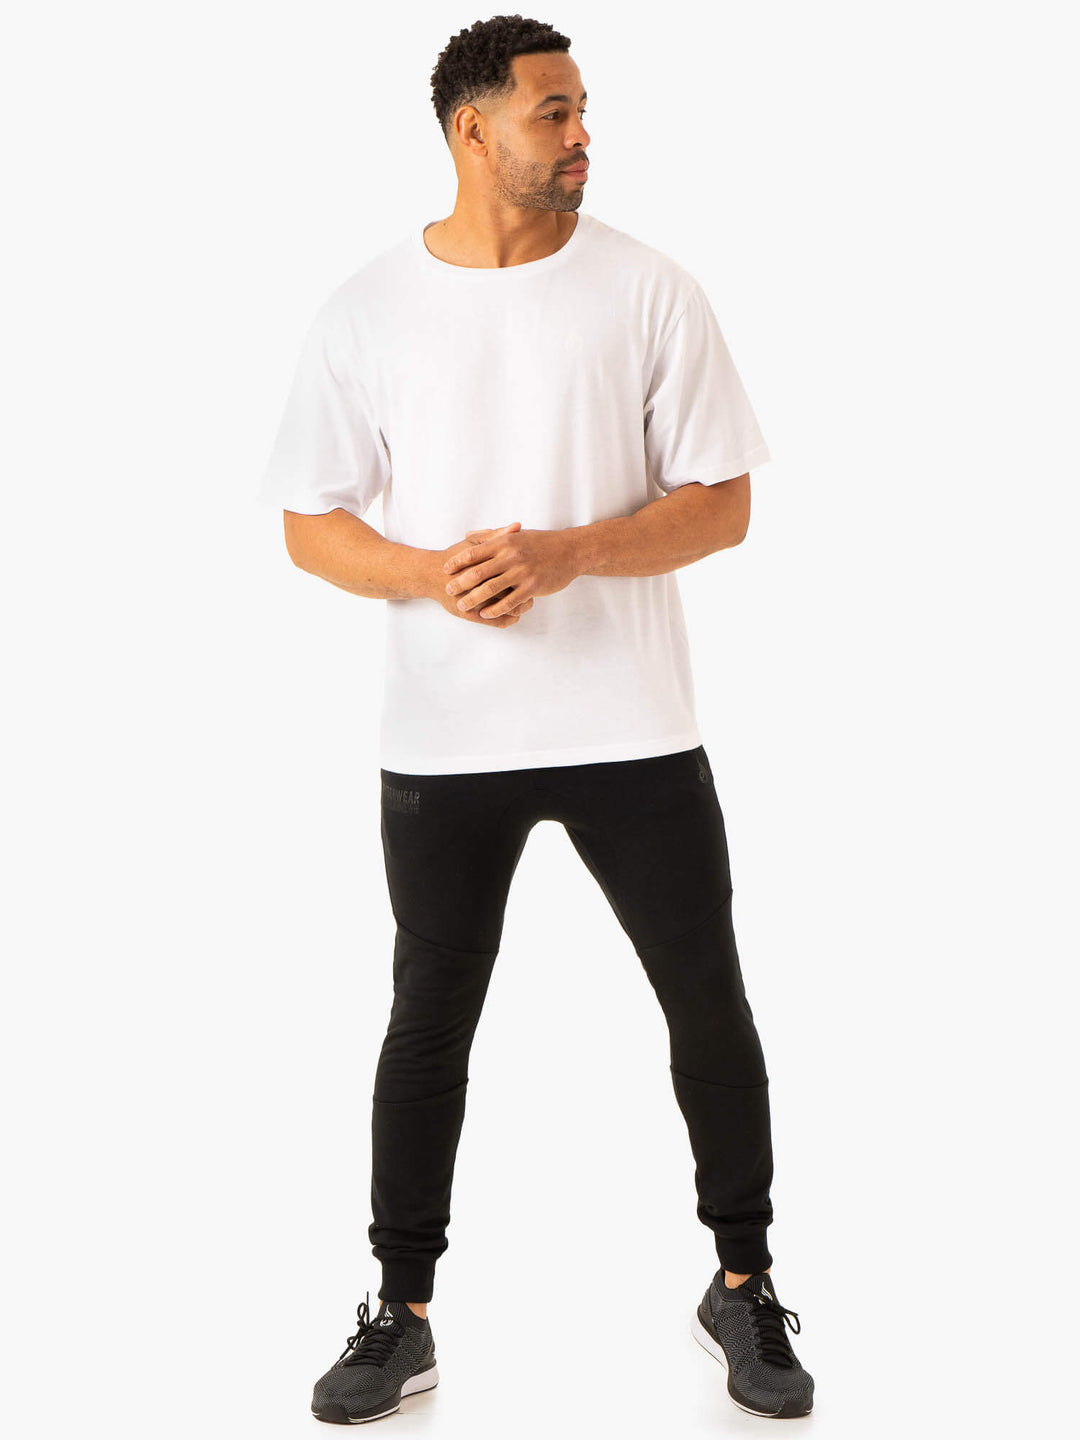 Lift Oversized Unisex T-Shirt - White Clothing Ryderwear 